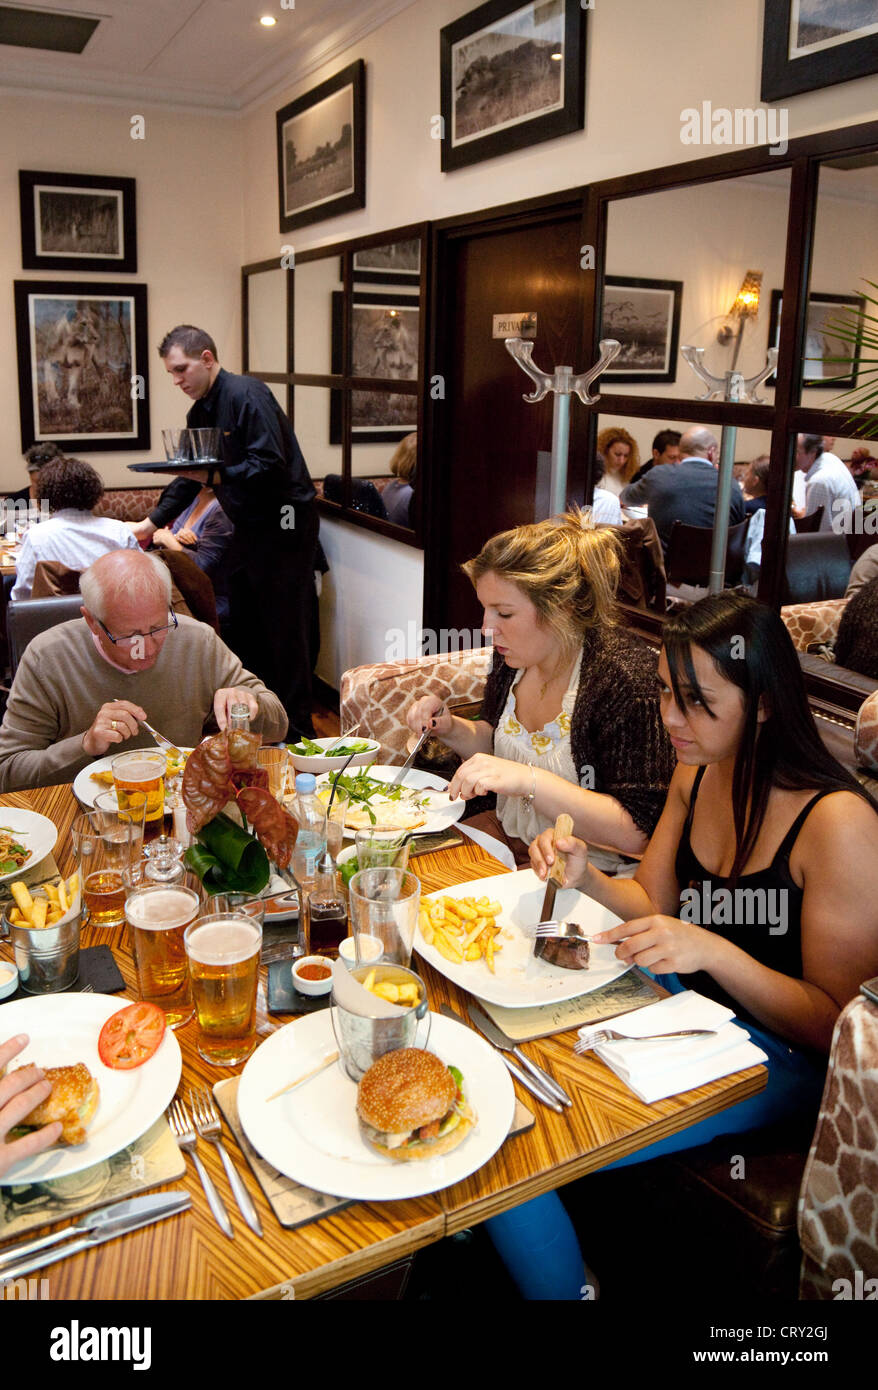 Menschen Essen in BBar Innere des Restaurants, Victoria, London UK Stockfoto